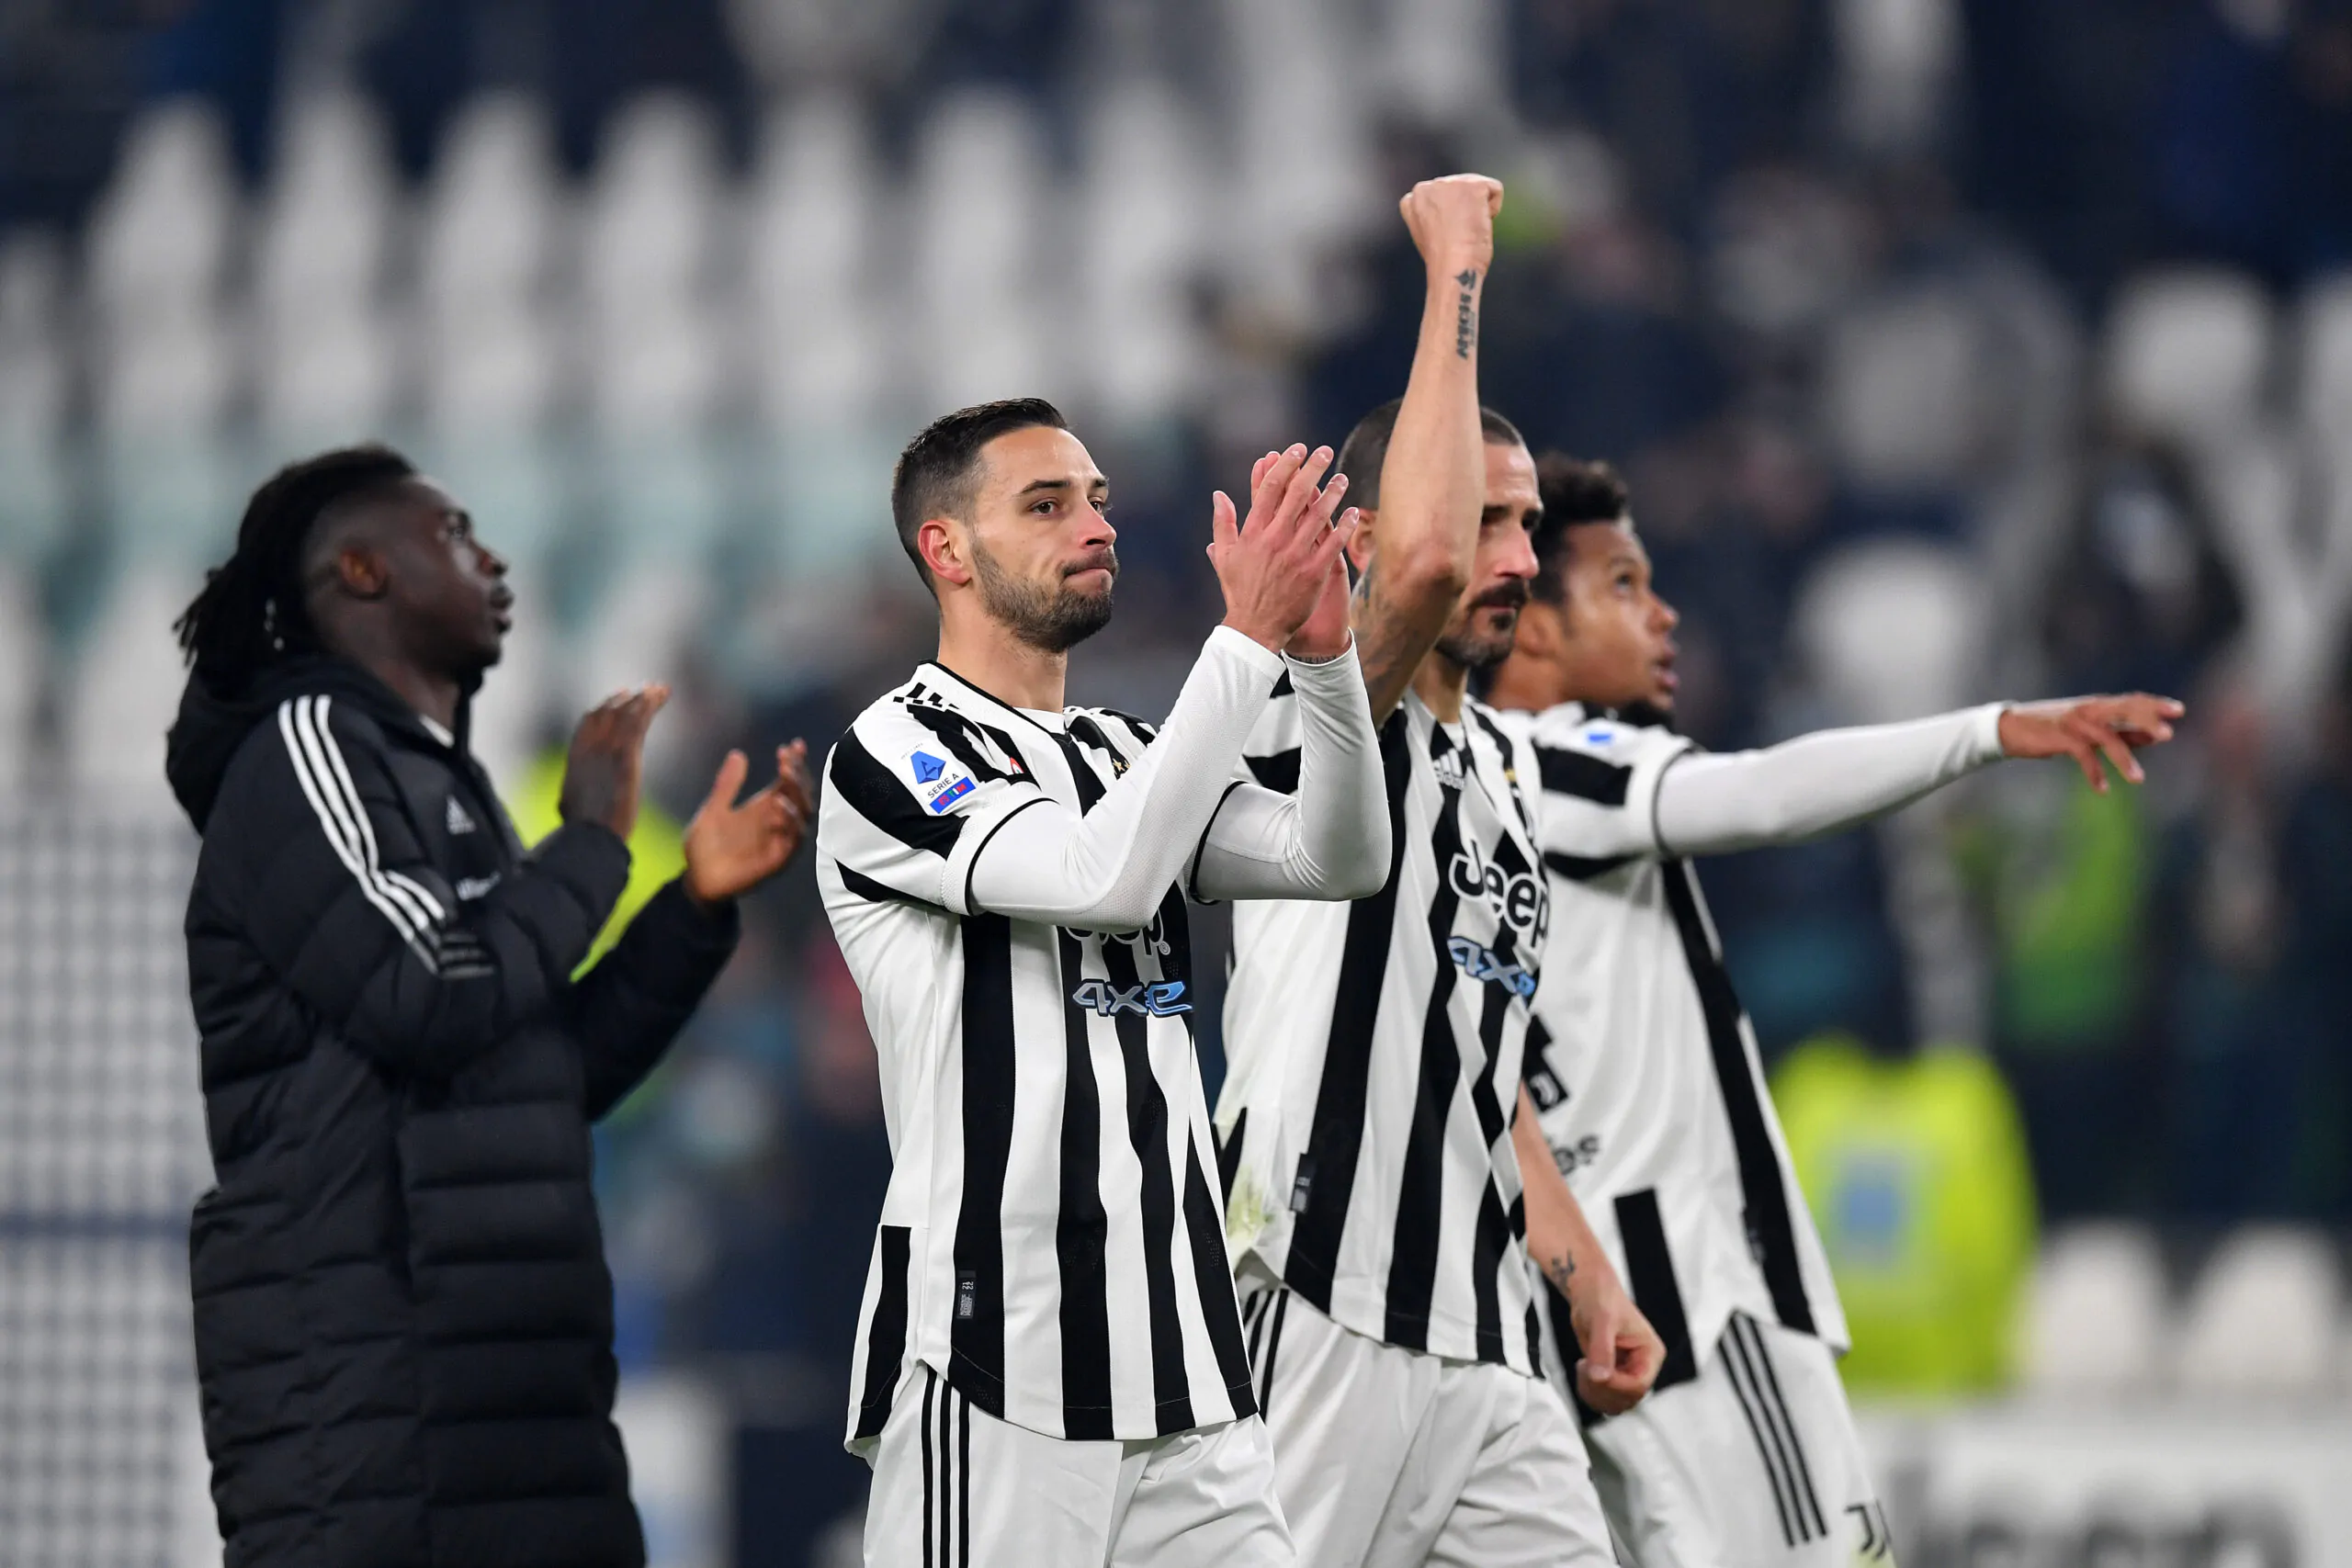 L’allenatore teme la Juventus: “Sono in ripresa, teniamoli d’occhio”